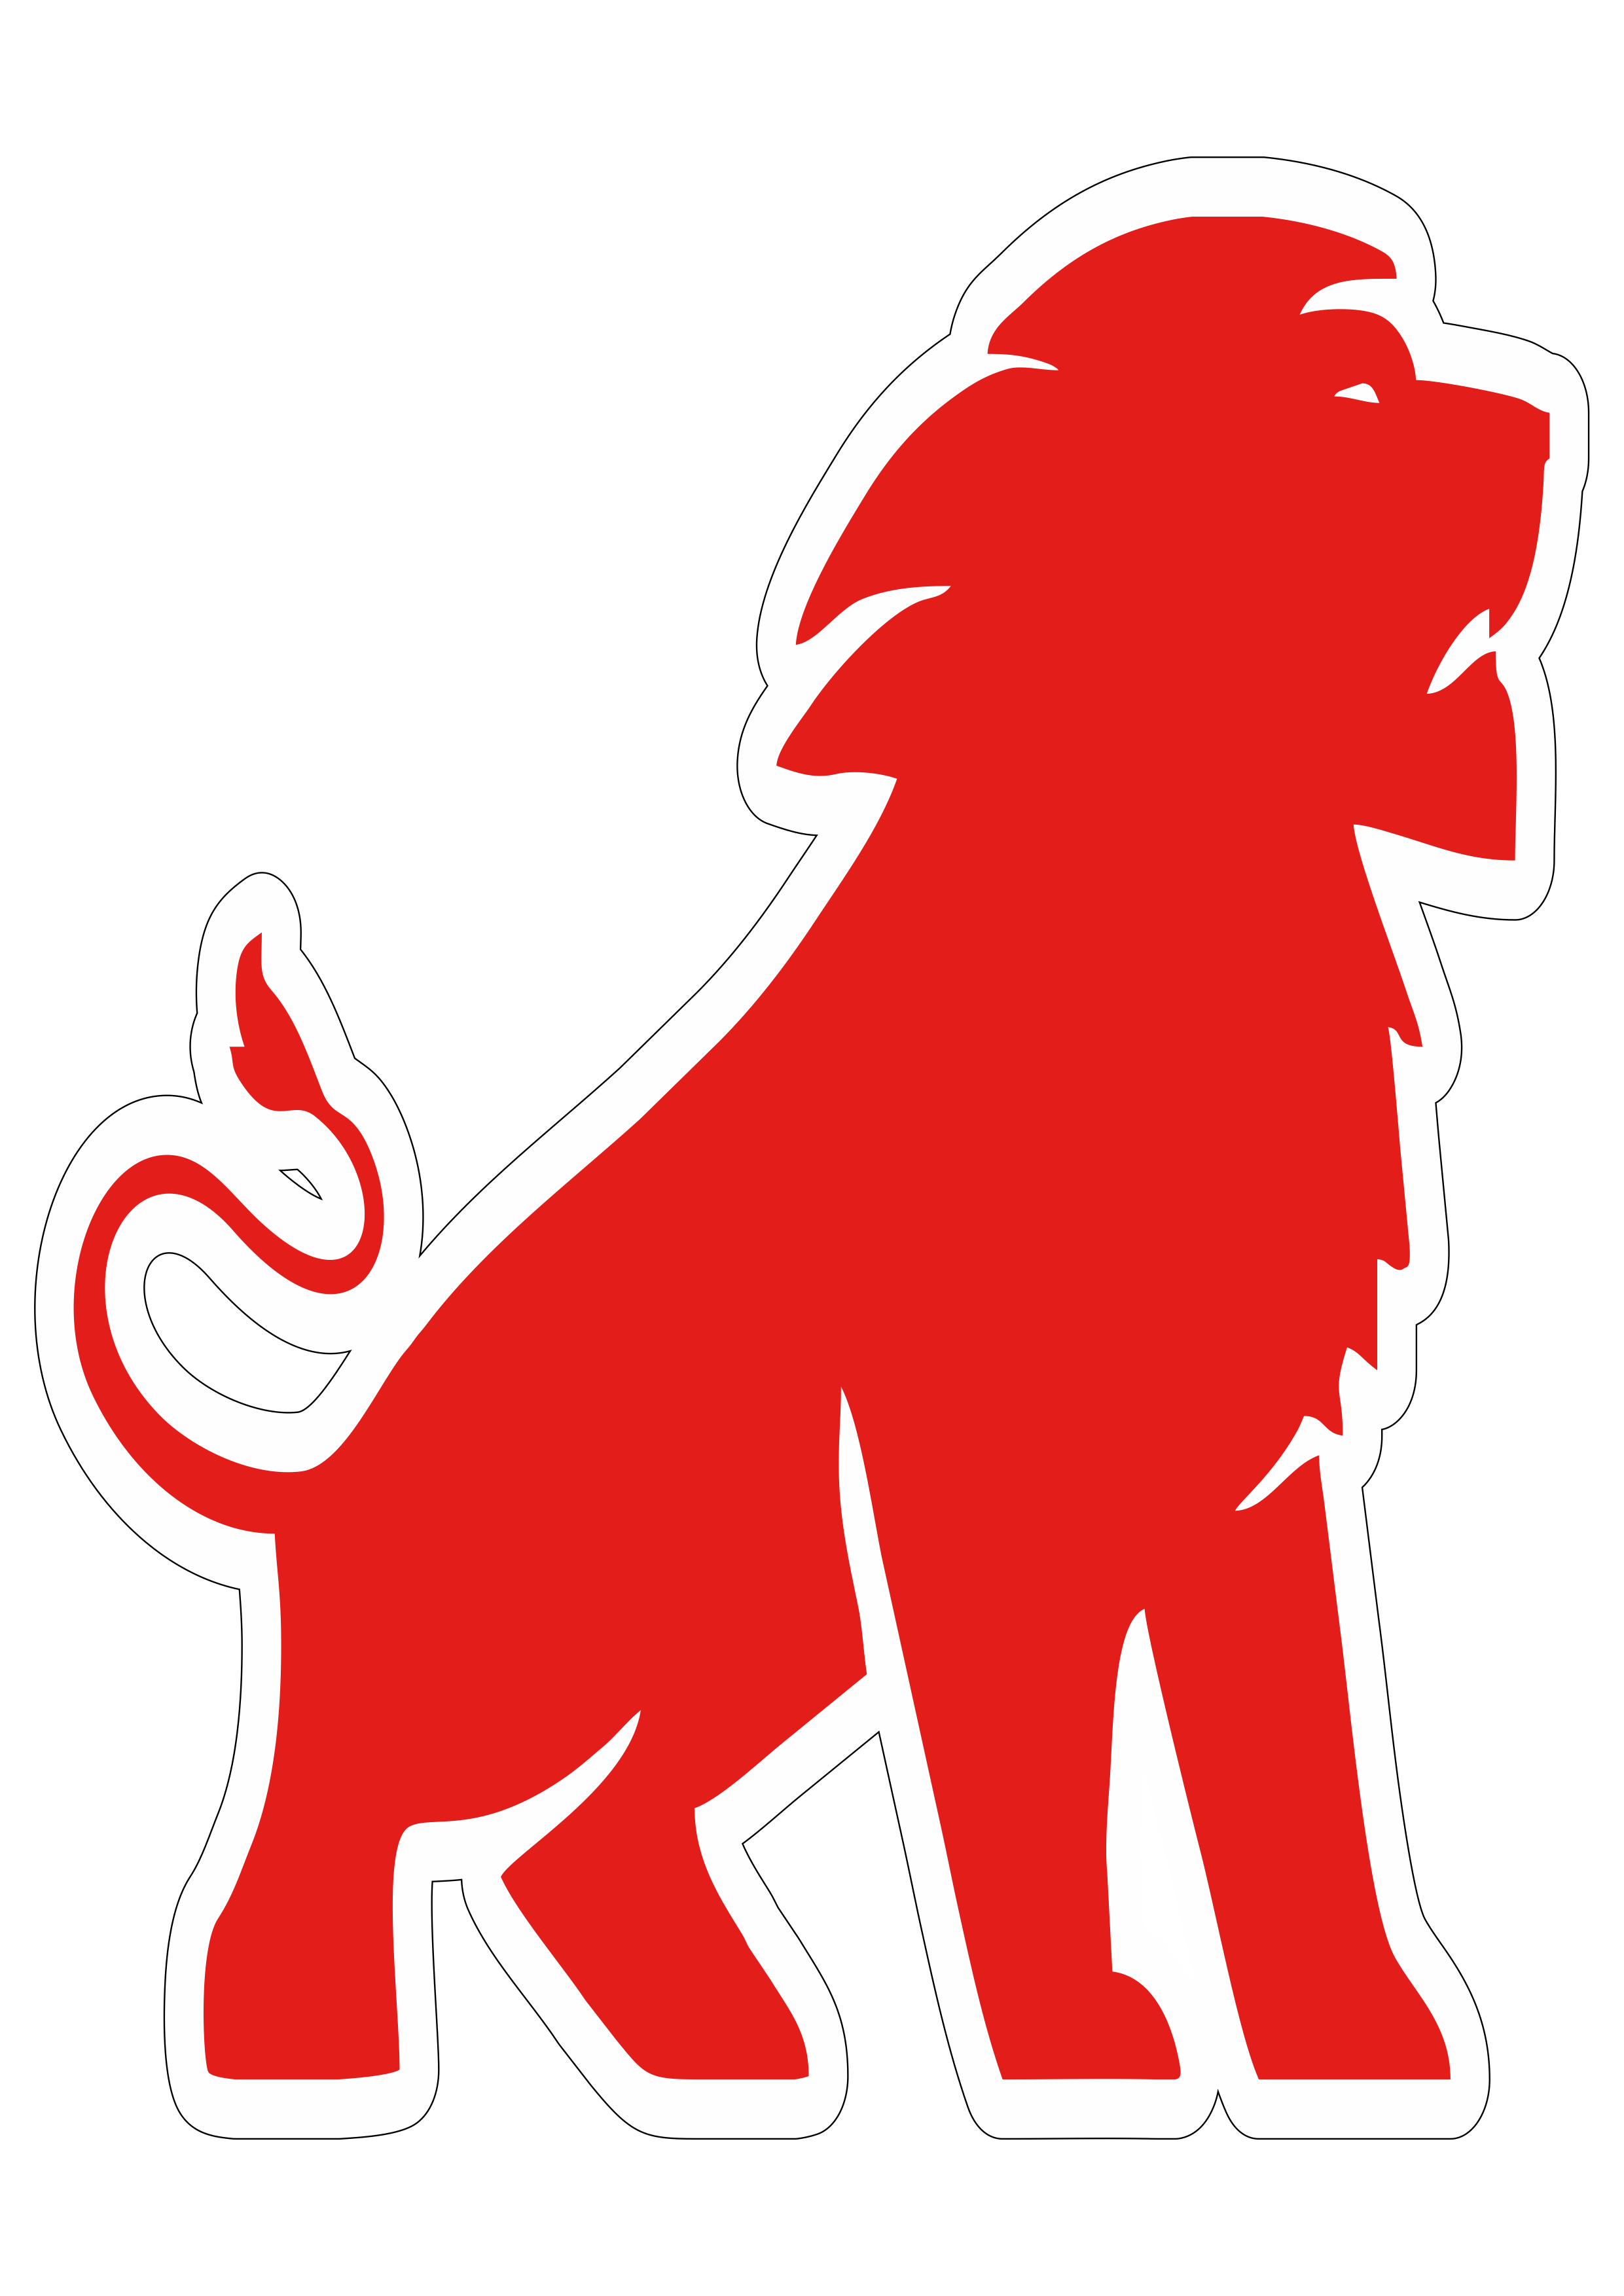 Fortaleza futebol clube símbolo mascote torcida leão vermelho fundo transparente png